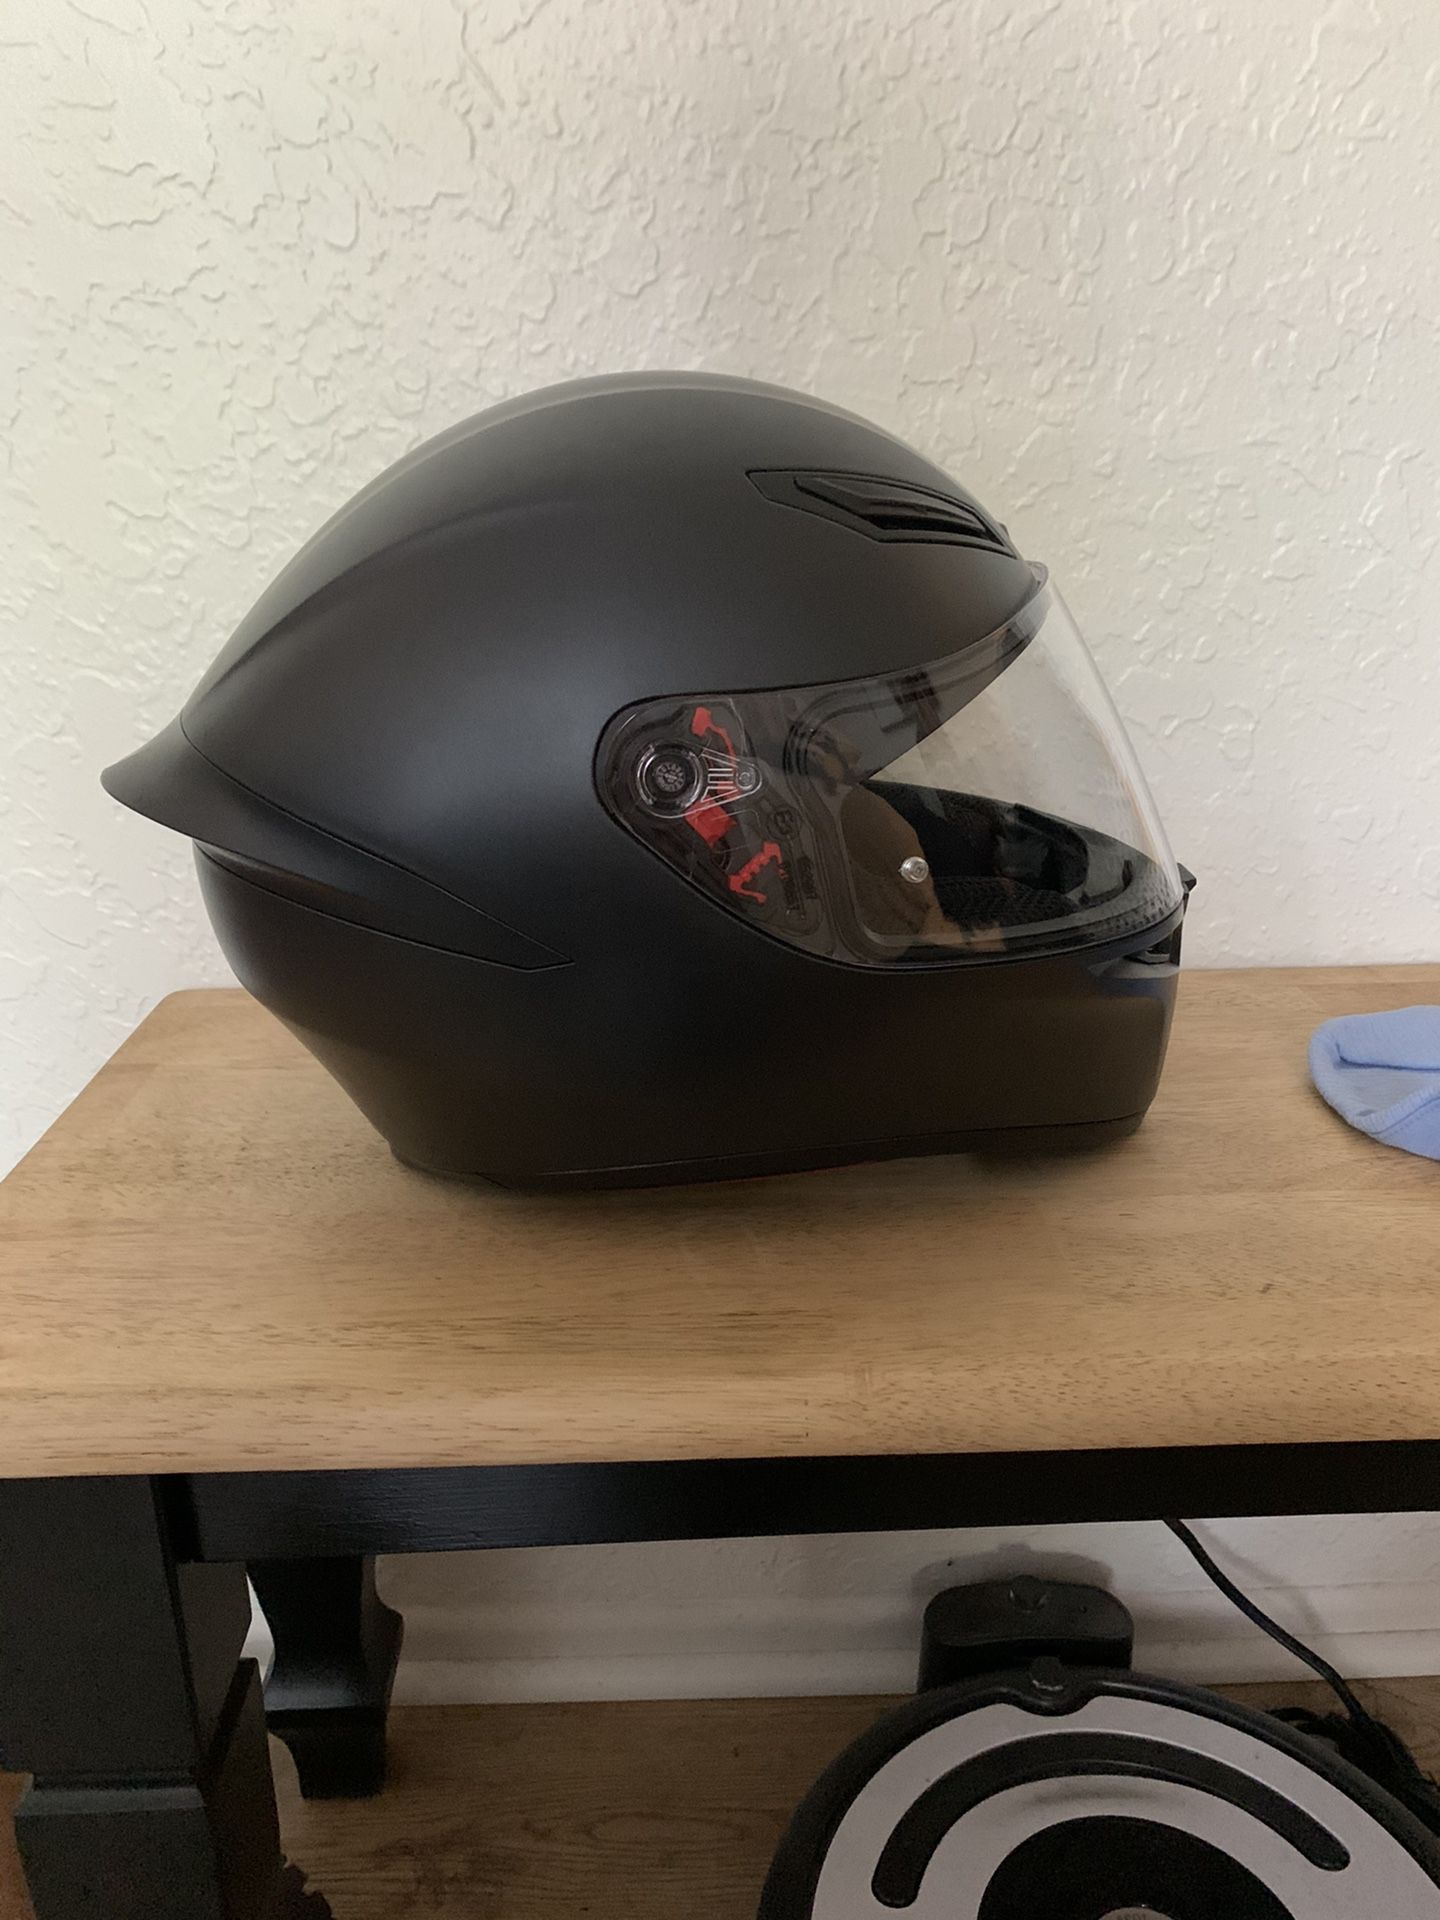 Women’s Motorcycle Gear - Helmet, Gloves, Jacket